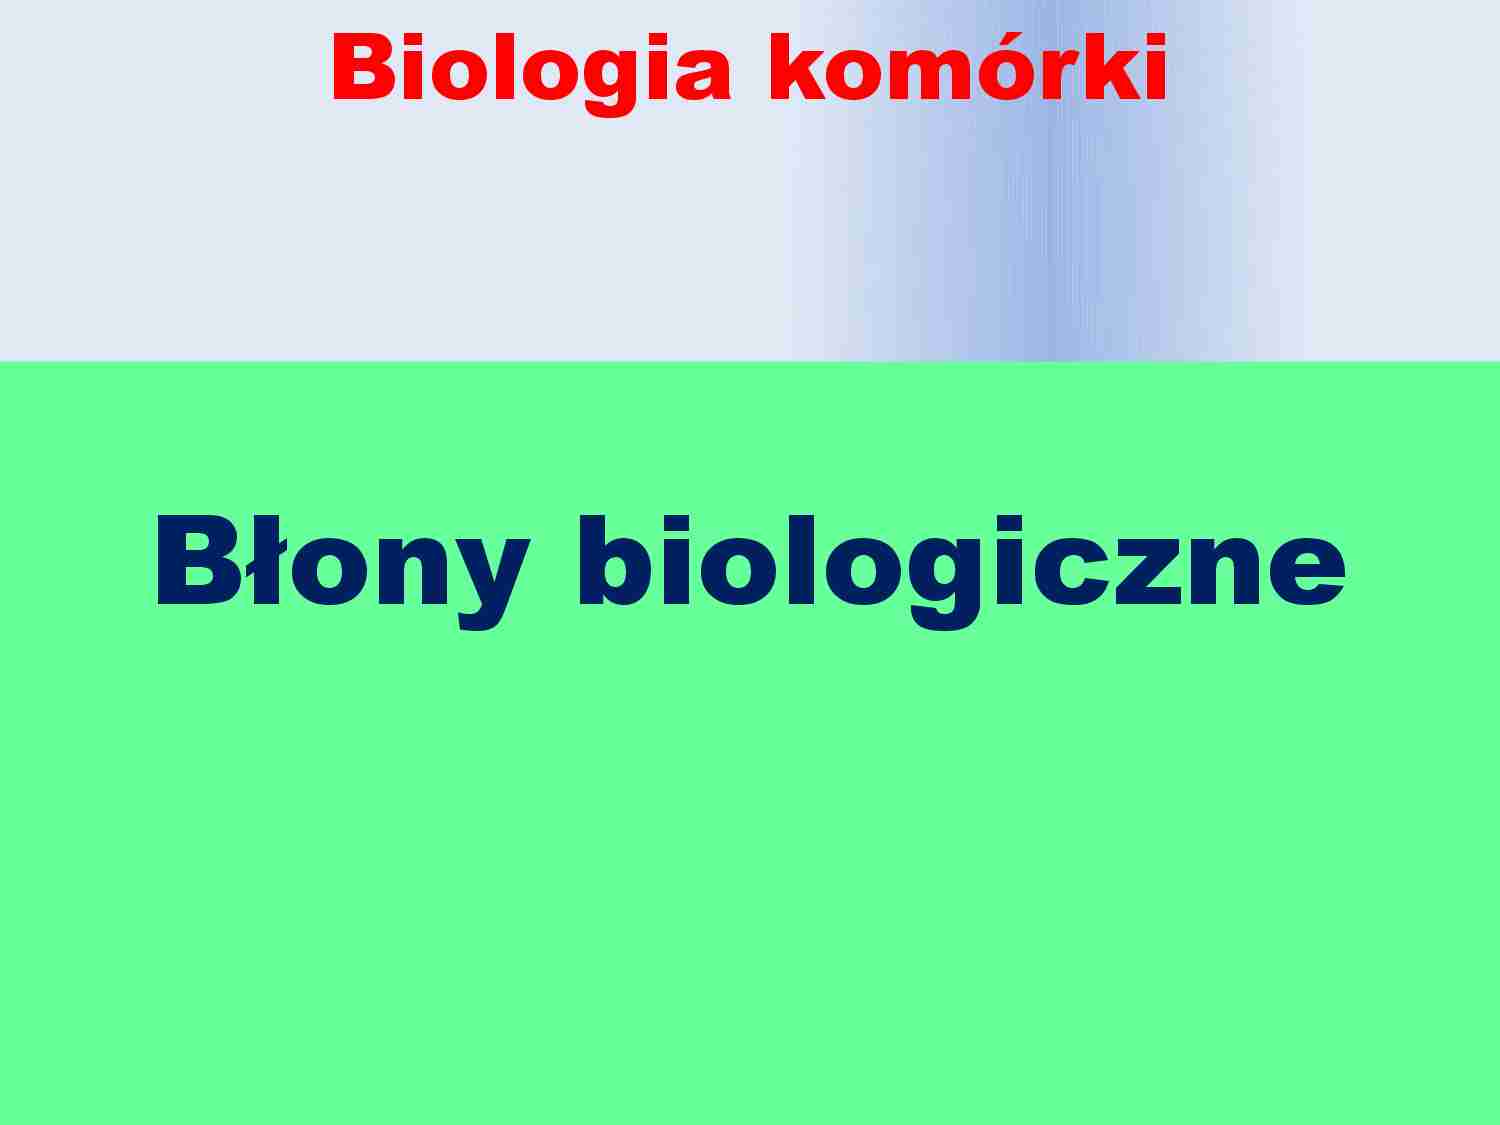 Błony biologiczne - biologia komórki - strona 1